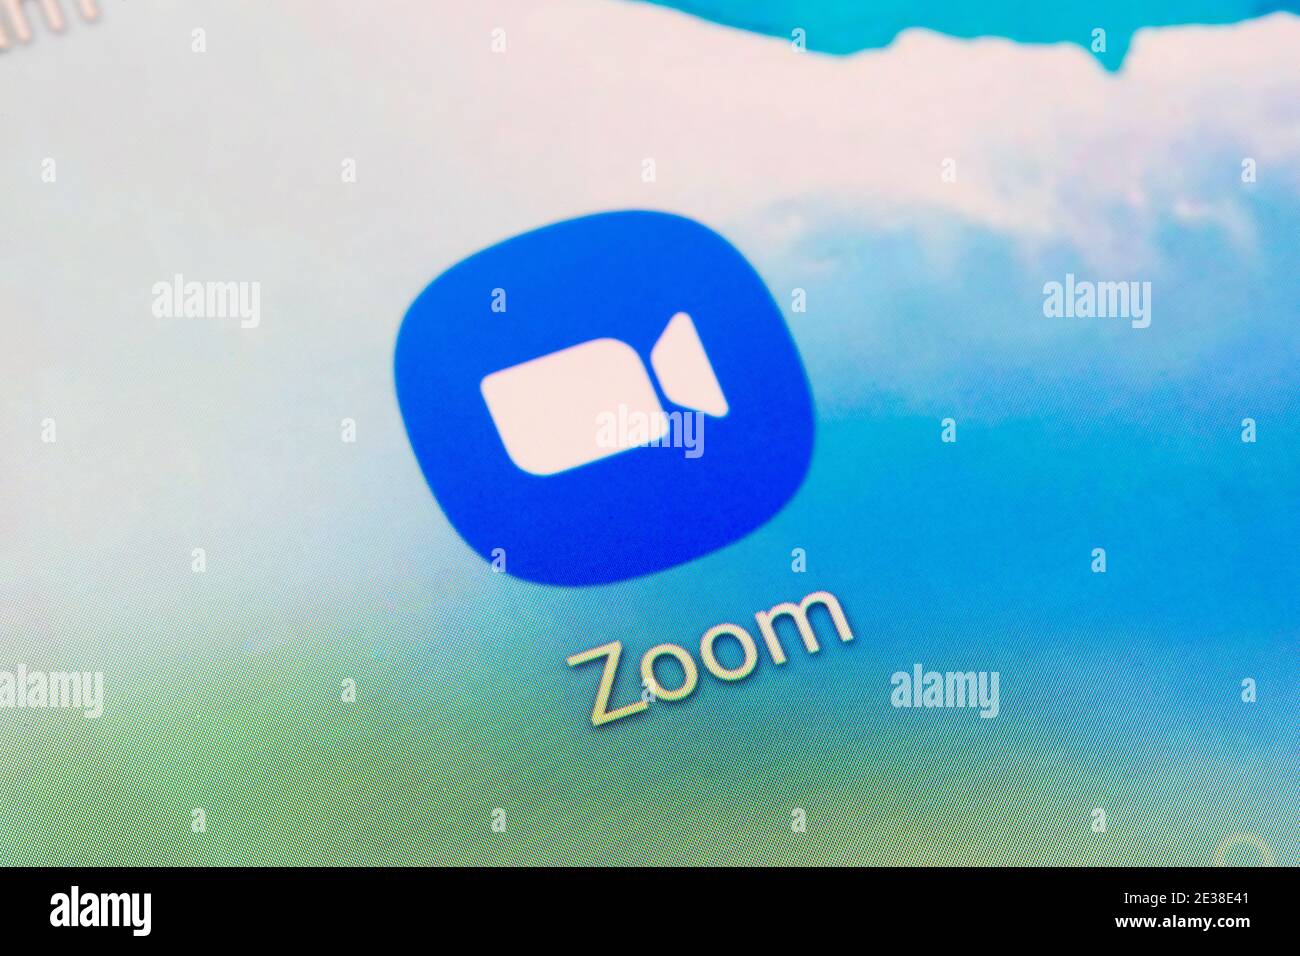 Eine Nahaufnahme des App-Logos für Zoom - A Videotelefonie Software-Programm von Zoom Video Communications entwickelt Stockfoto